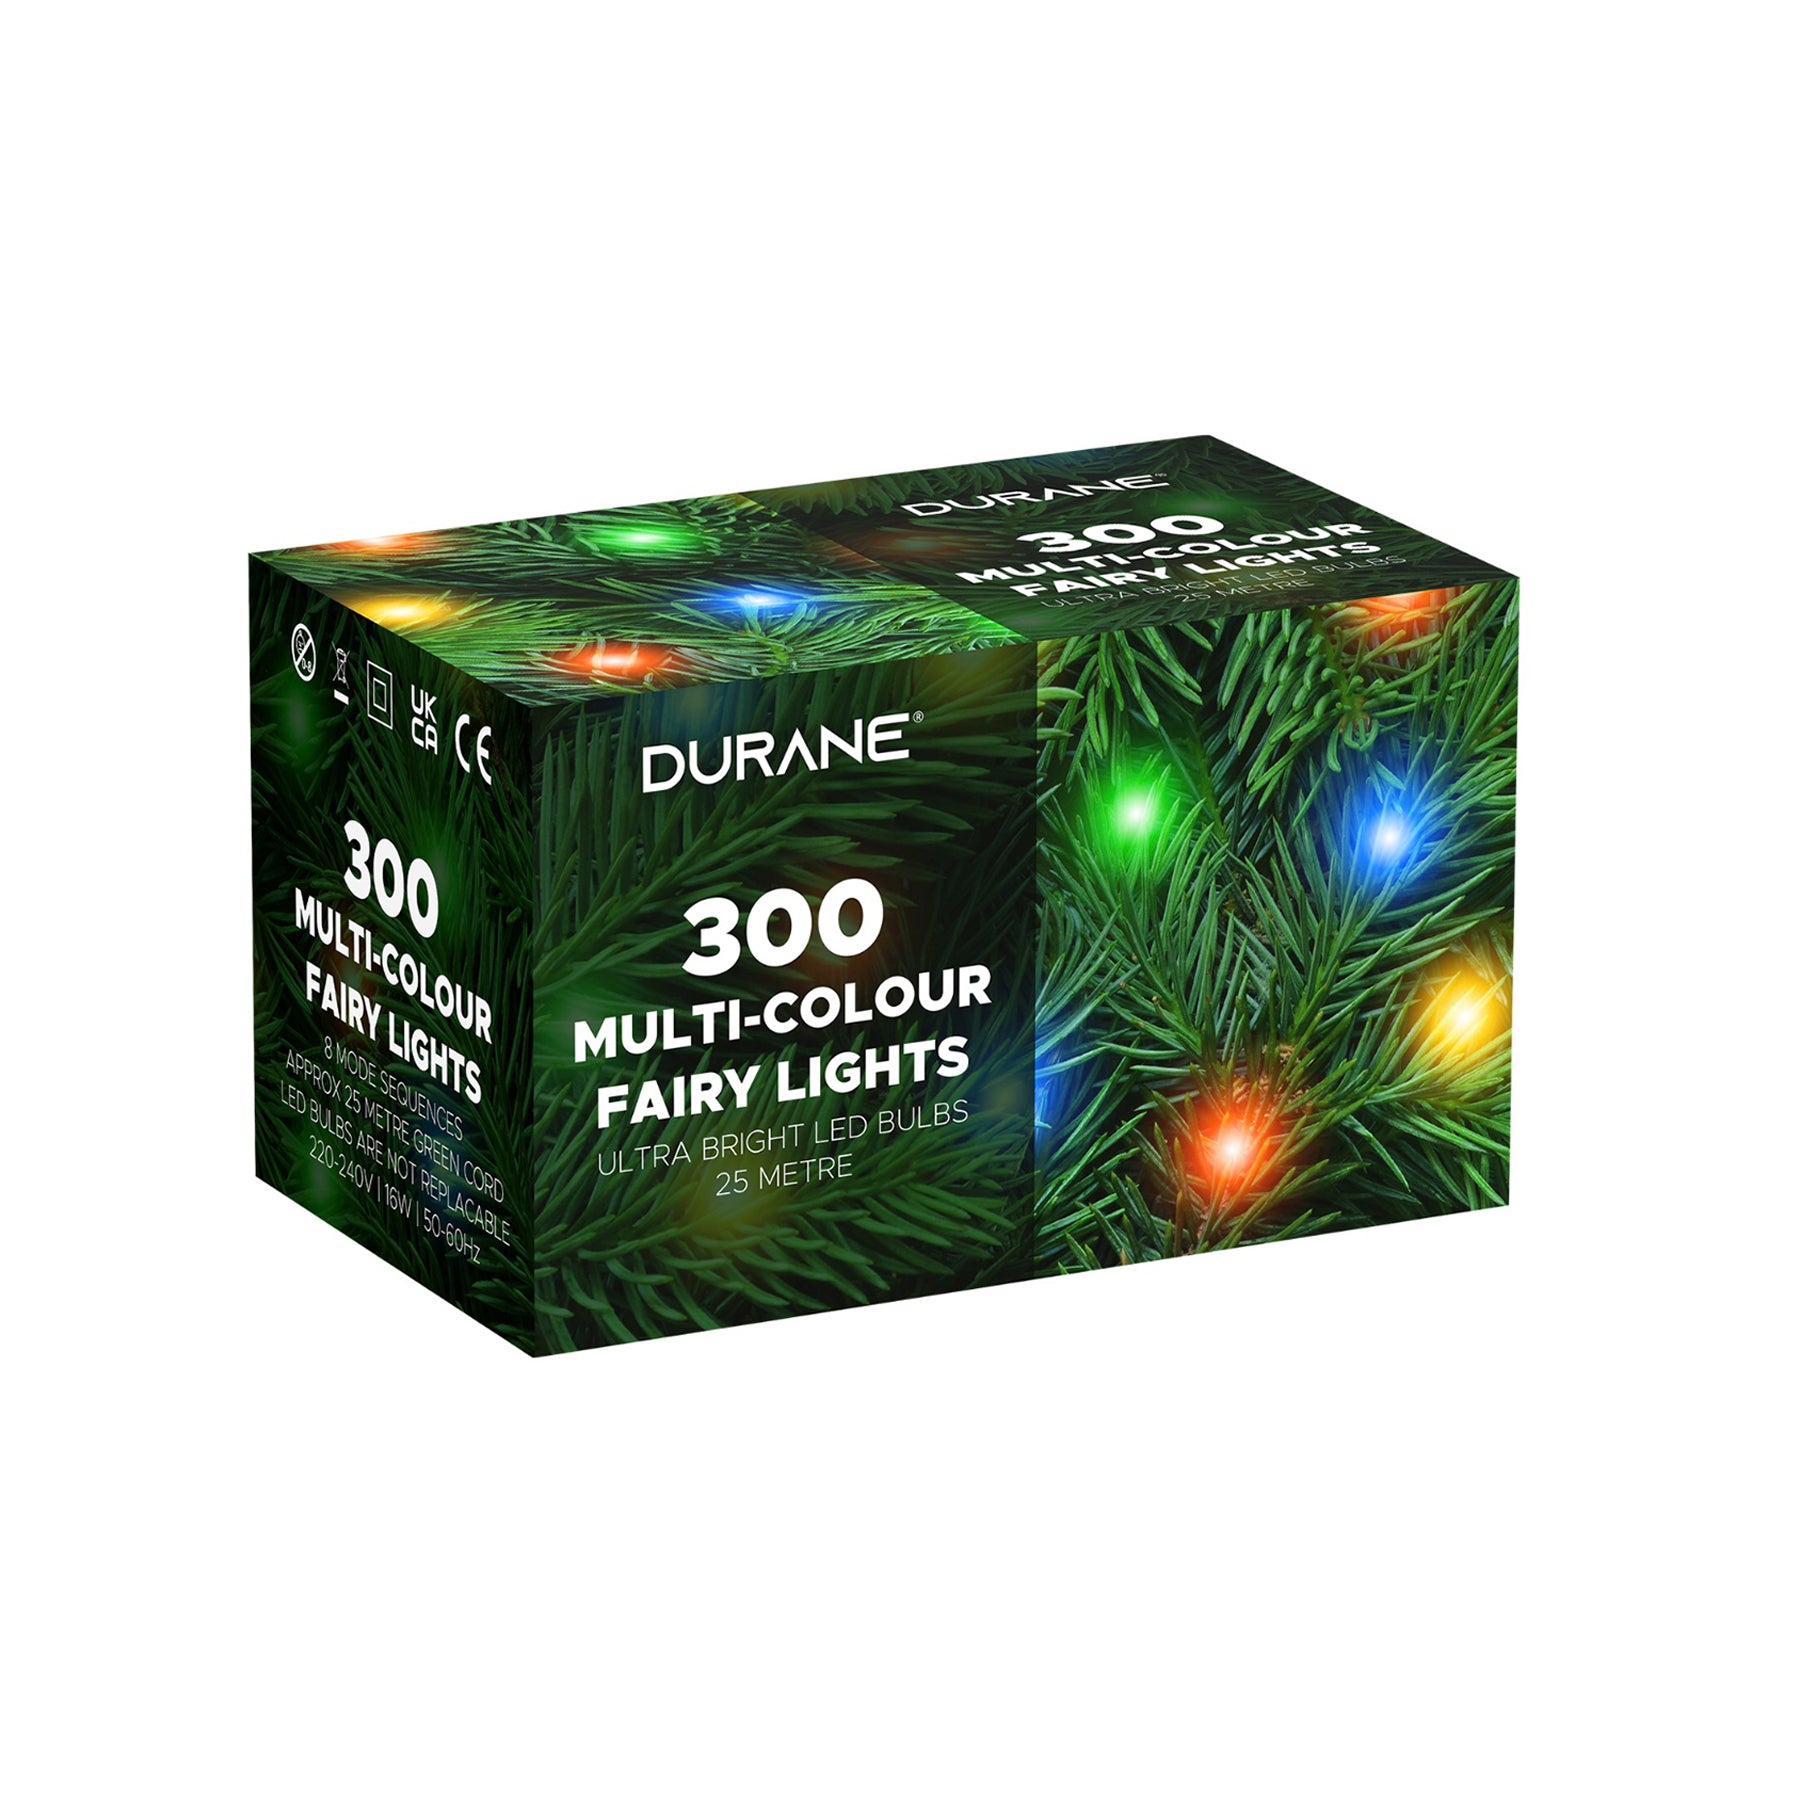 Multi-Color Fairy Lights with LED 300 Bulbs - 25 Mtr